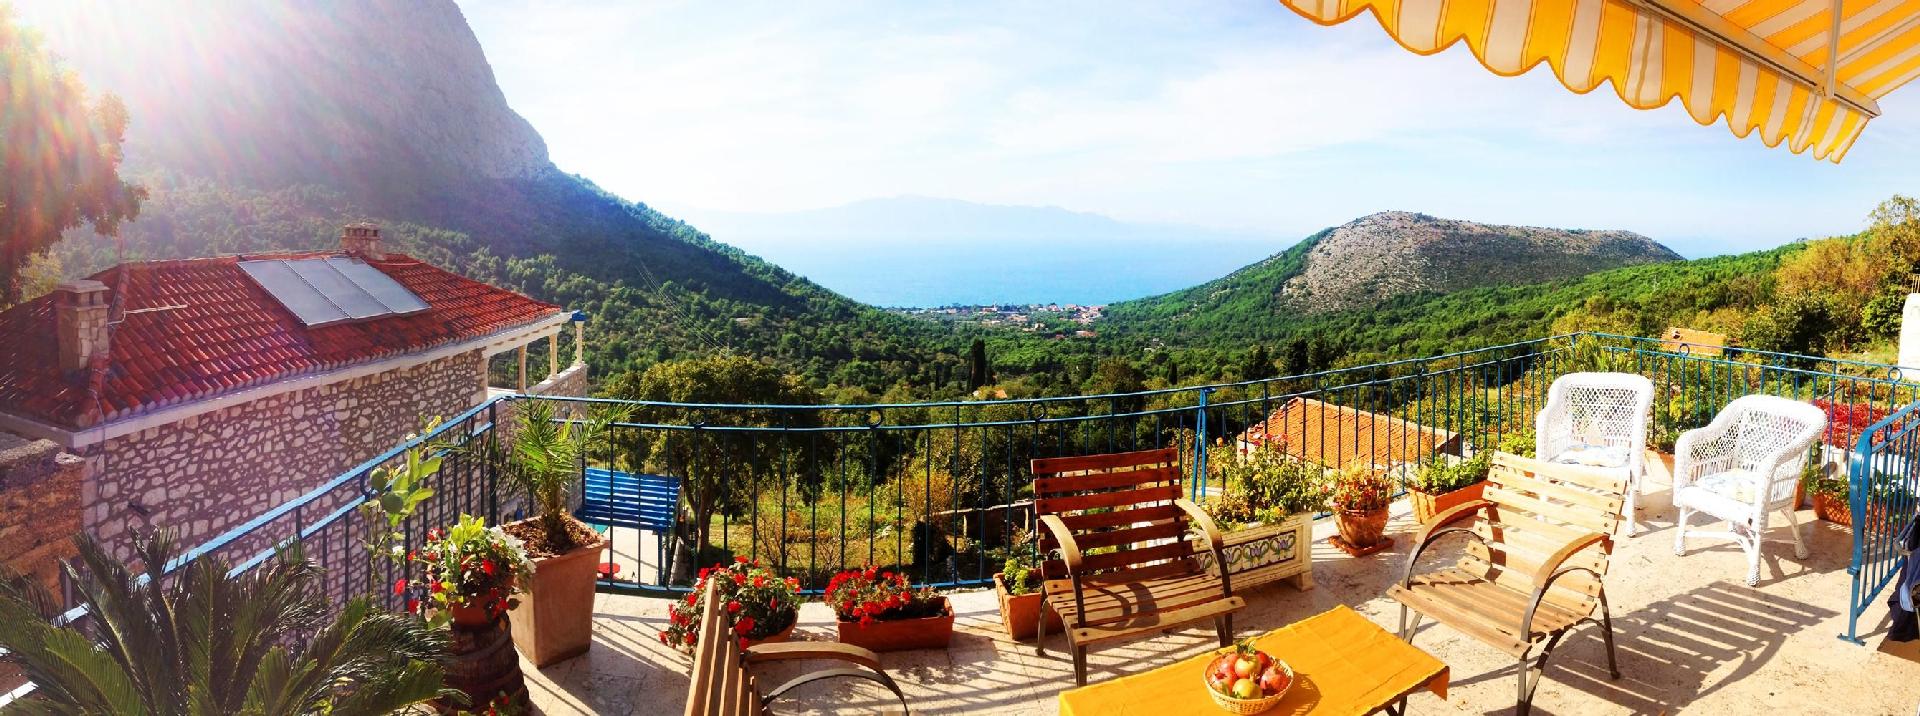 Ferienhaus in Srida Sela mit Grill und Terrasse un Ferienhaus  Makarska Riviera